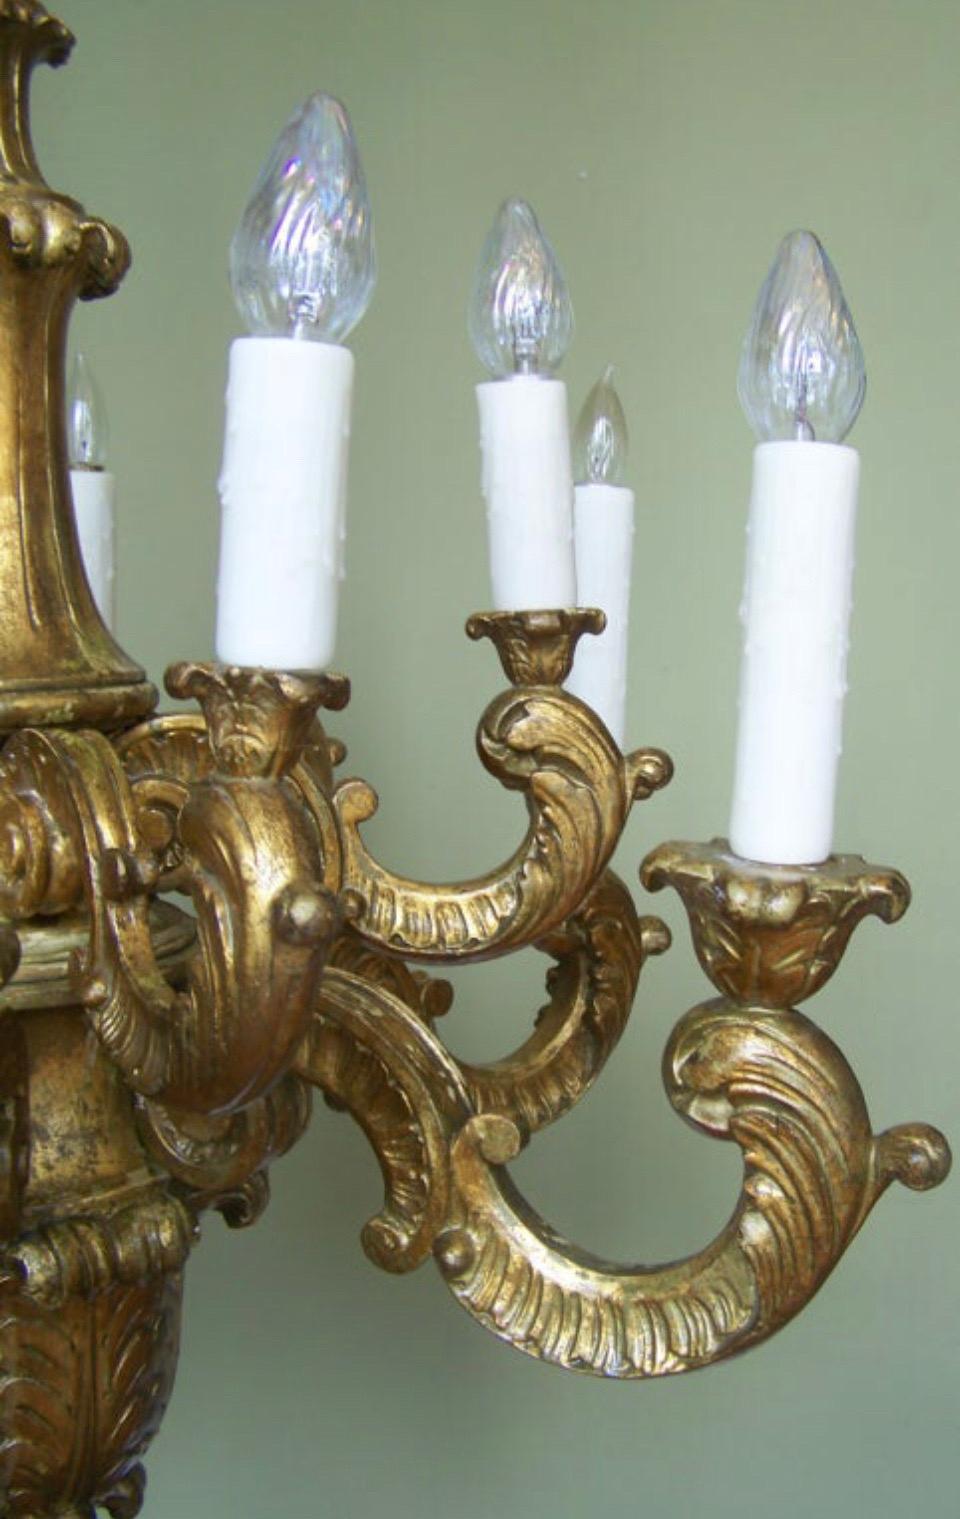 Grand lustre italien du début du XXe siècle en bois doré sculpté à la main comporte douze lampes sur deux étages. Le lustre baroque en bois doré présente une impressionnante tige tournée sculptée à la main descendant à quatre rosettes au-dessus